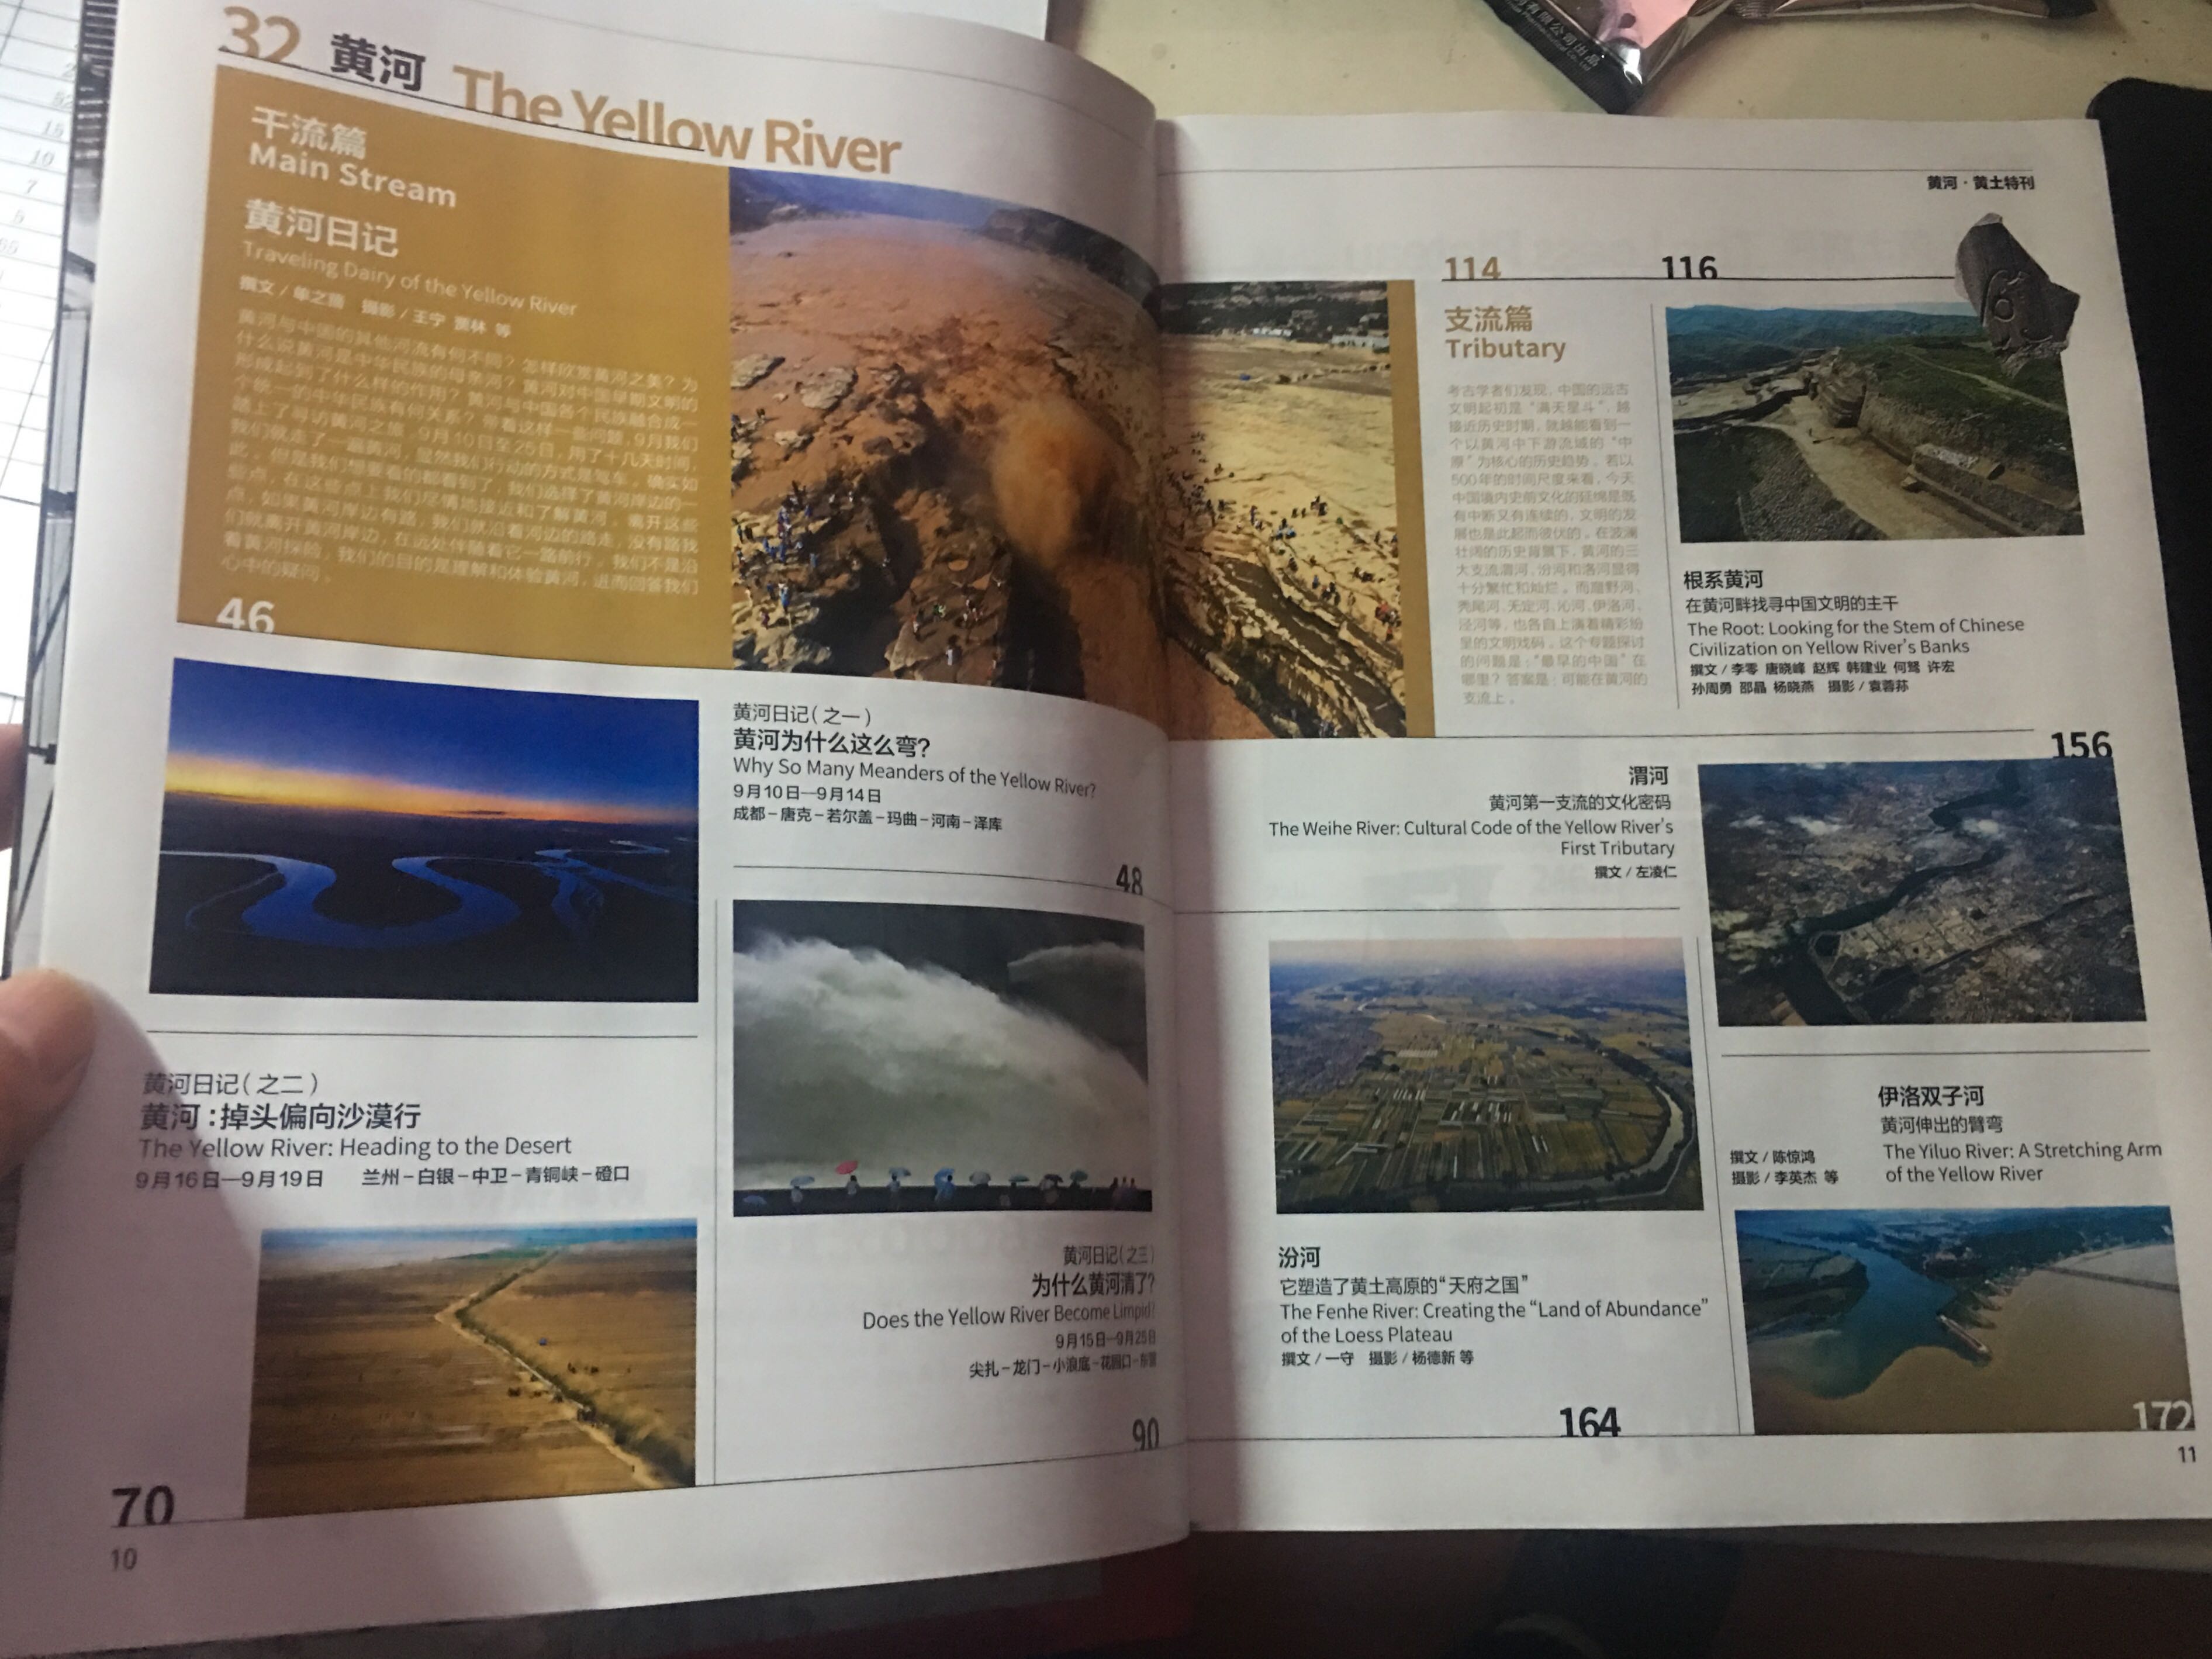 超值加厚版，详细介绍了黄河流域的地理地貌，还送了惠济专刊及黄河流域全景图。物有所值。